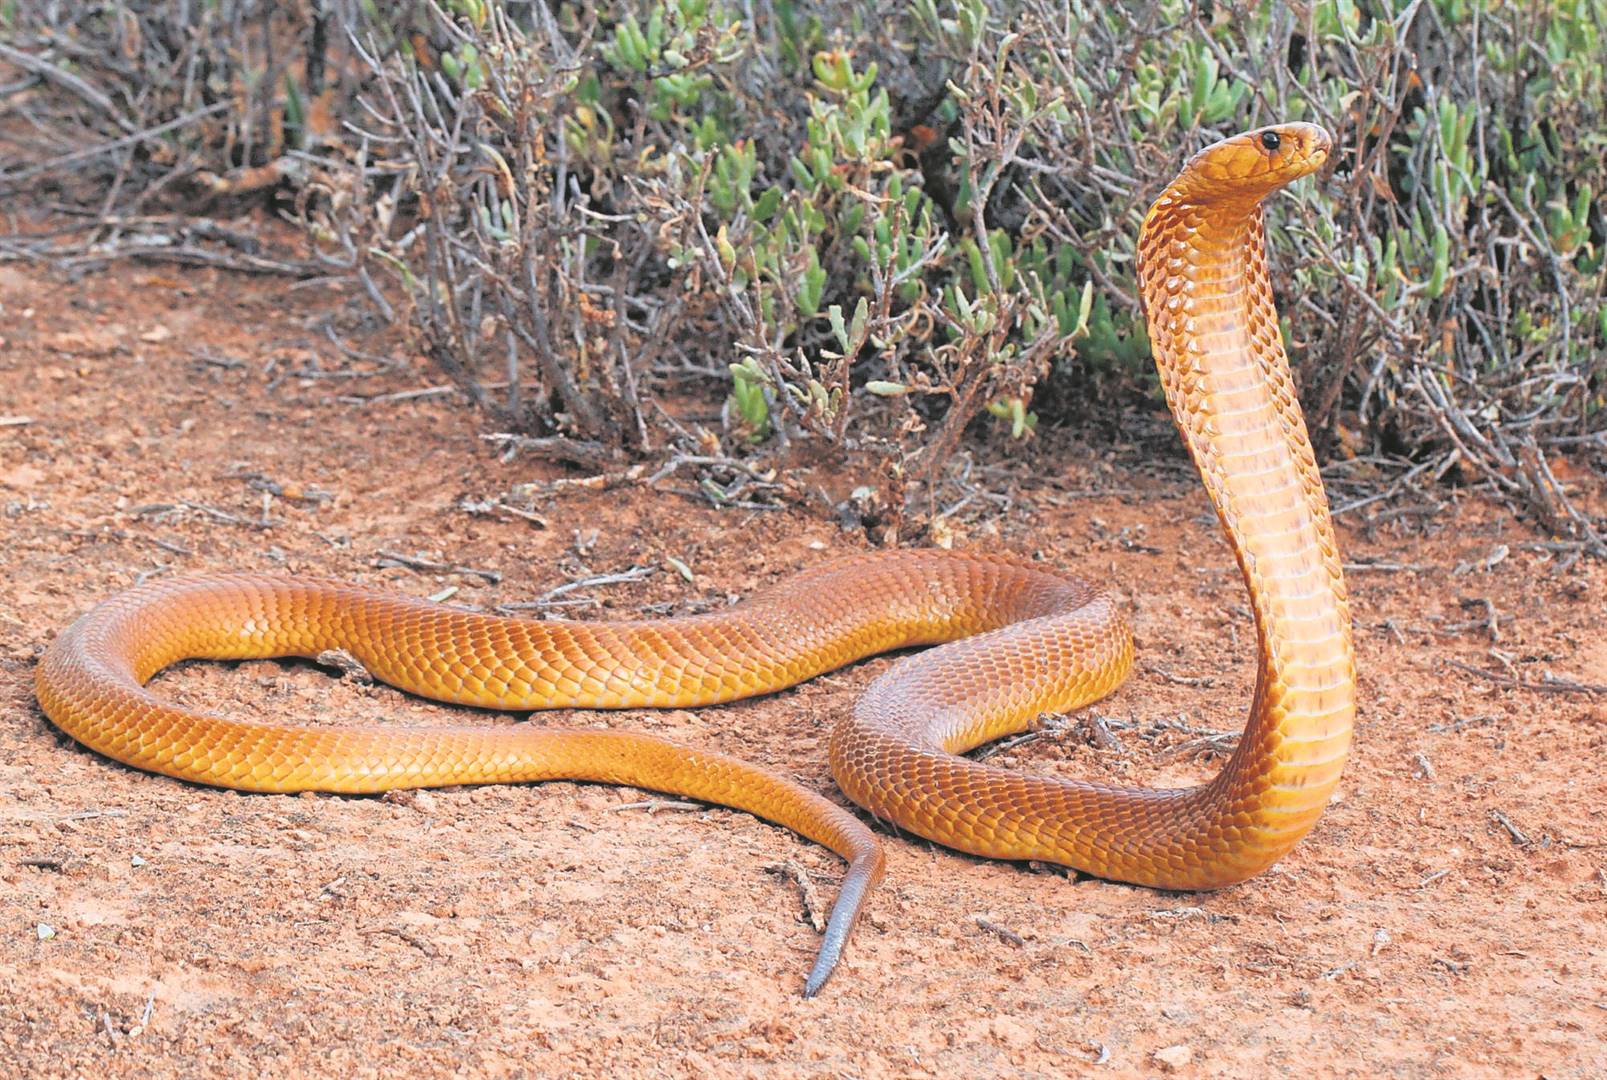 A deadly Cape cobra. Photo: File